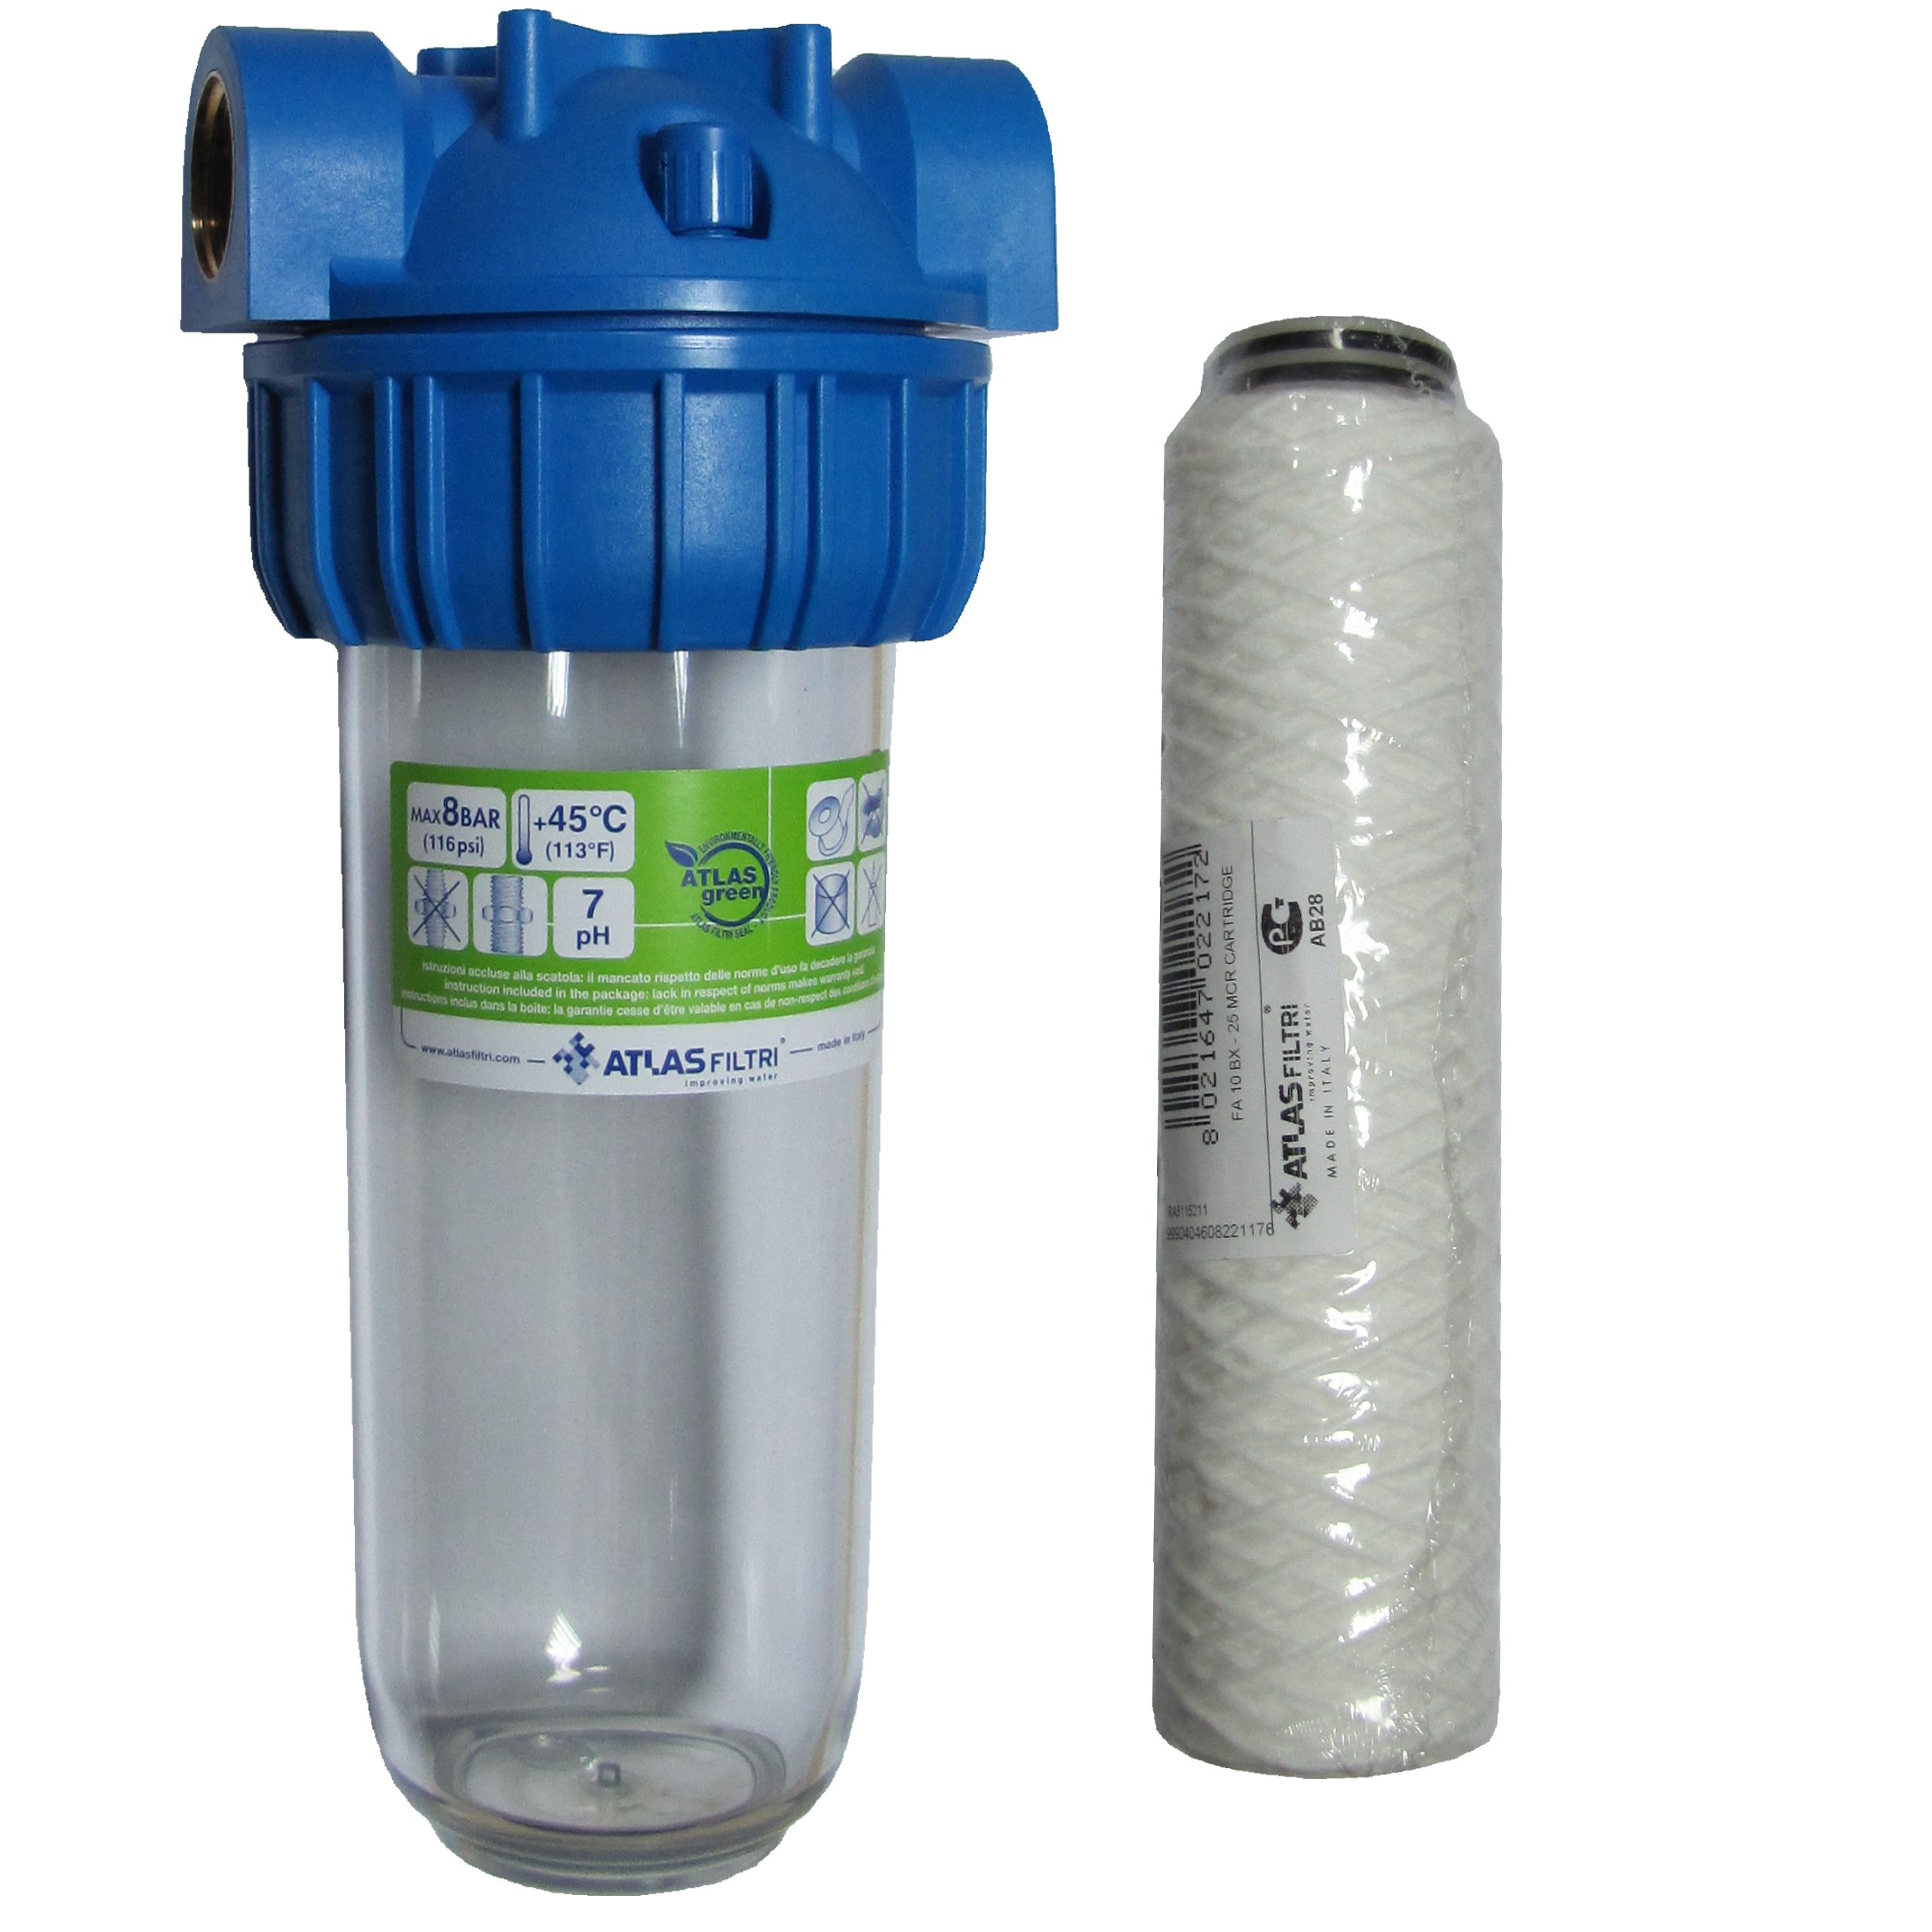 Фильтры умягчения воды для дома. Умягчитель dosapol7 Atlas filtri. Фильтр Atlas filtri Triplex 2p. Фильтр p10 mono 1/2" Atlas filtri. Фильтр для воды Atlas filtri Green.